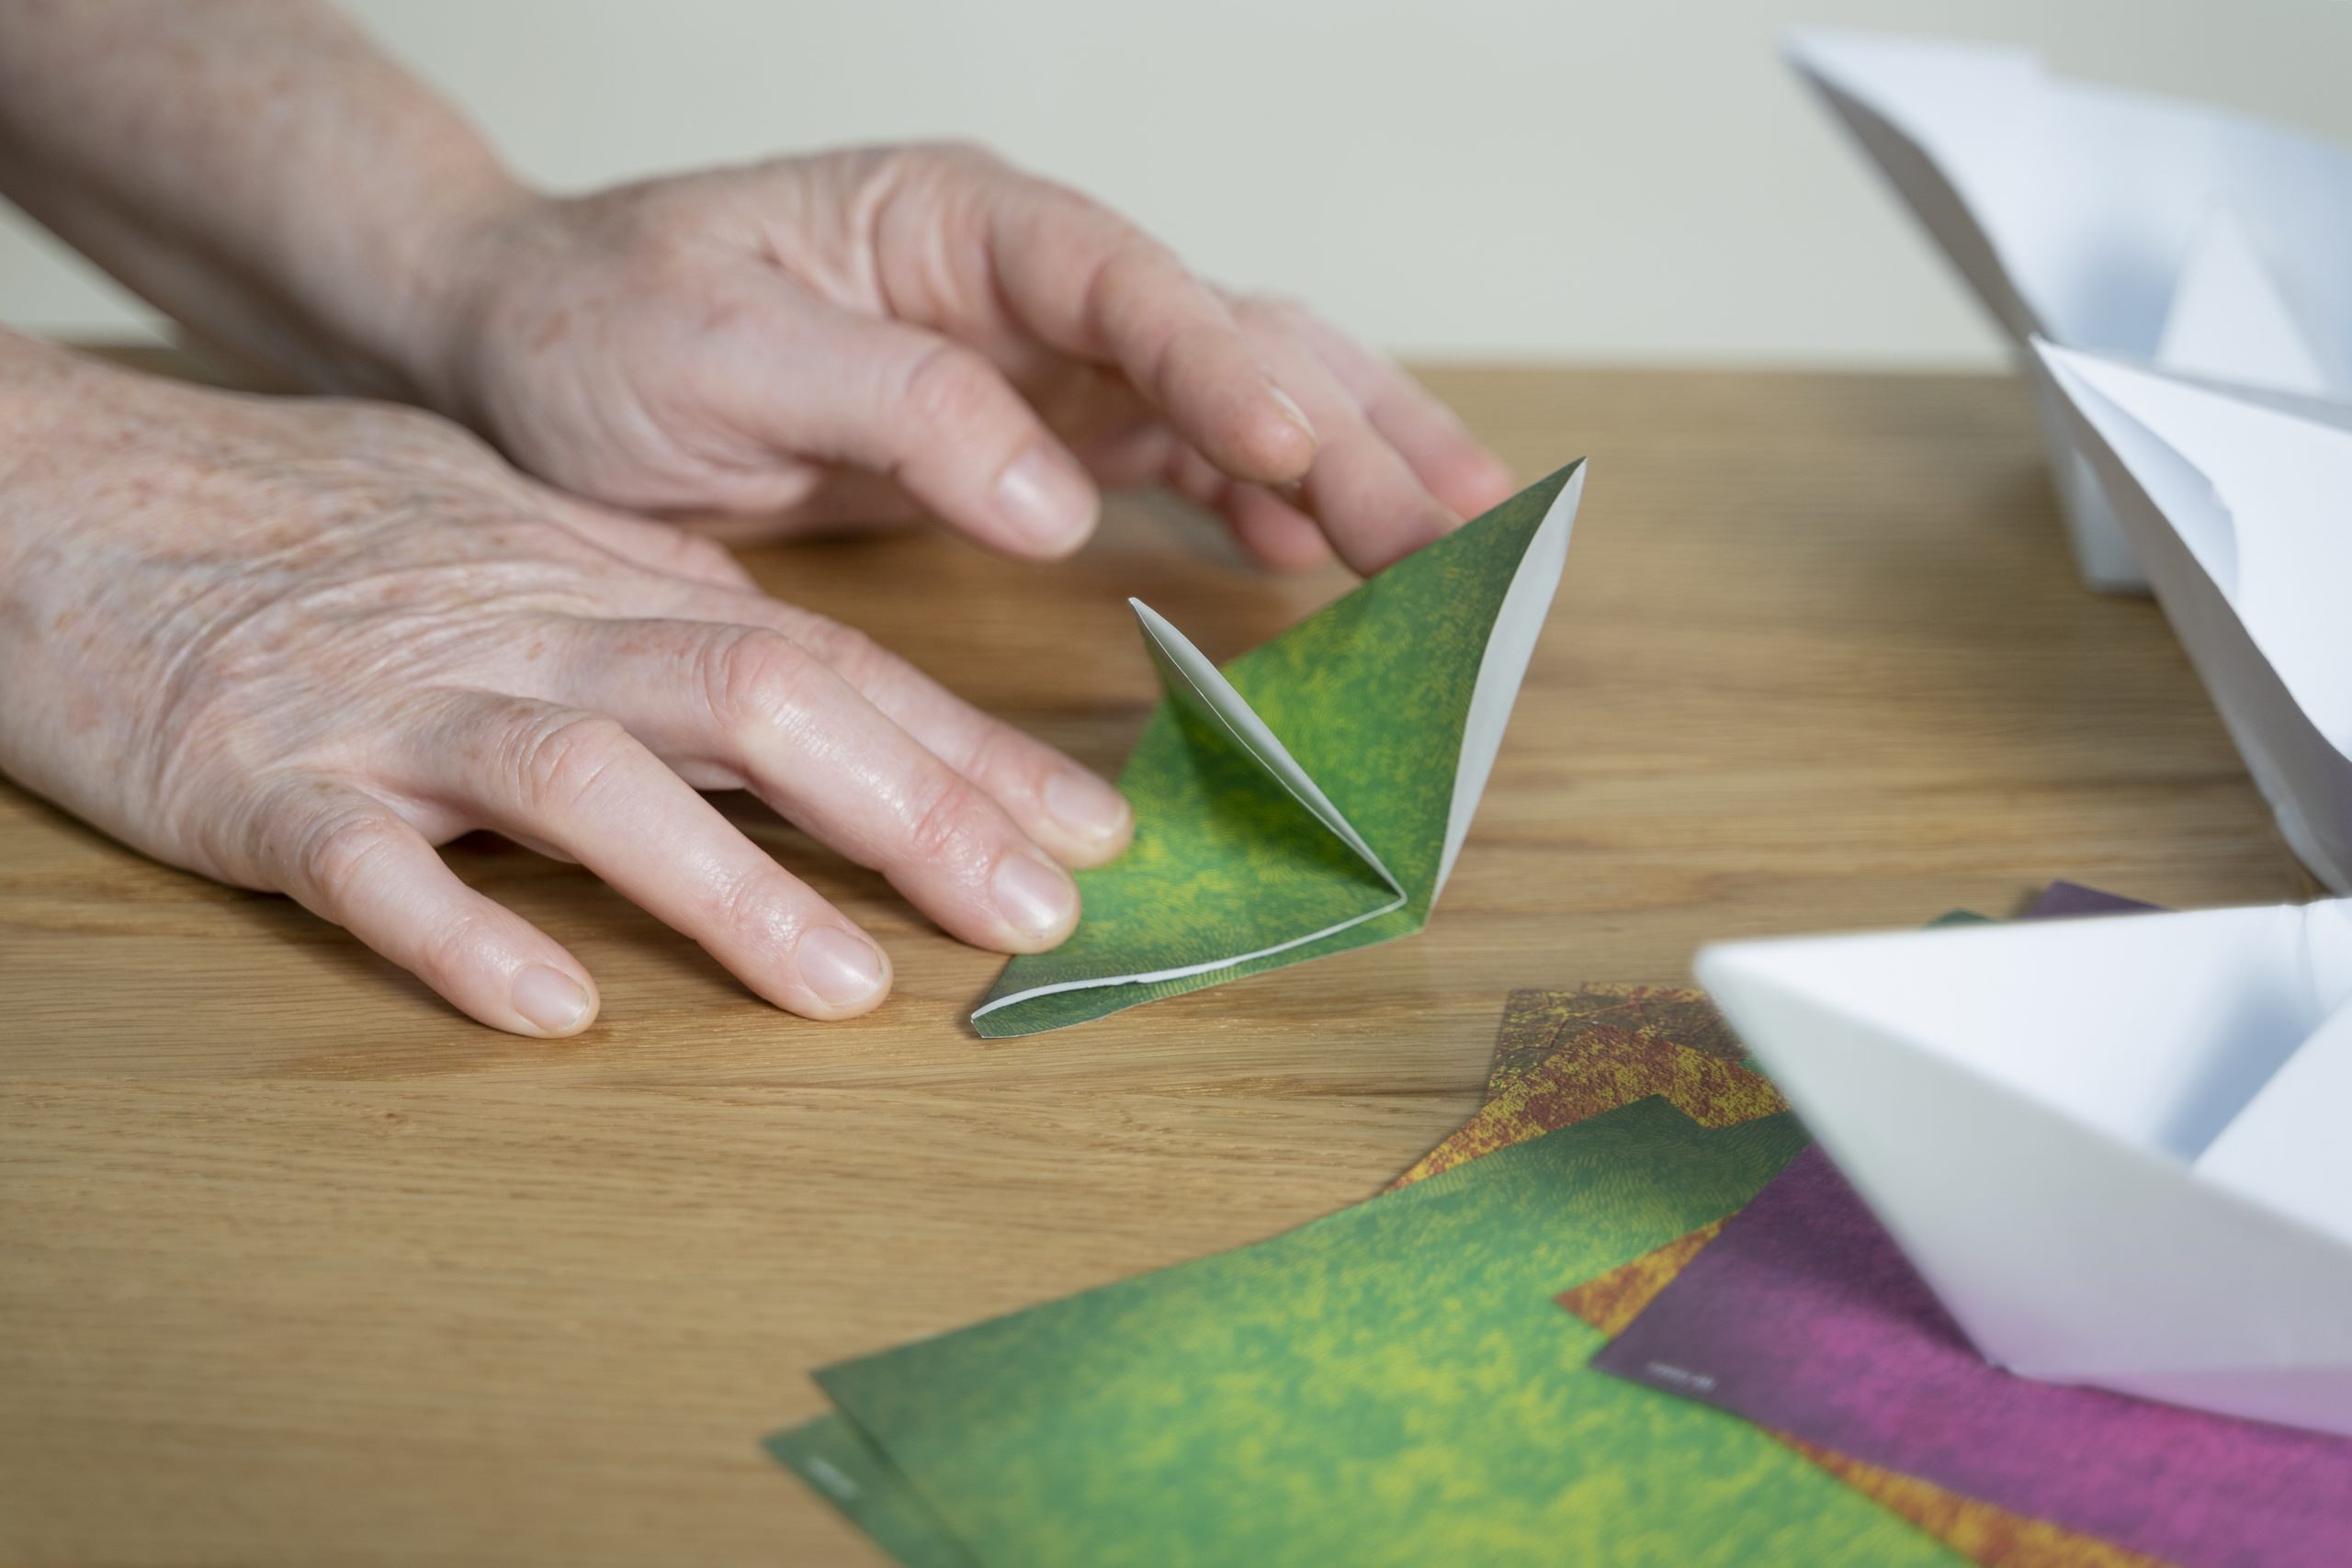 .זוג ידיים מקפלות נייר אוריגמי לצורה של שני משולשים. על השולחן ברקע ניירות אוריגמי צבעוניים ולבנים נוספים